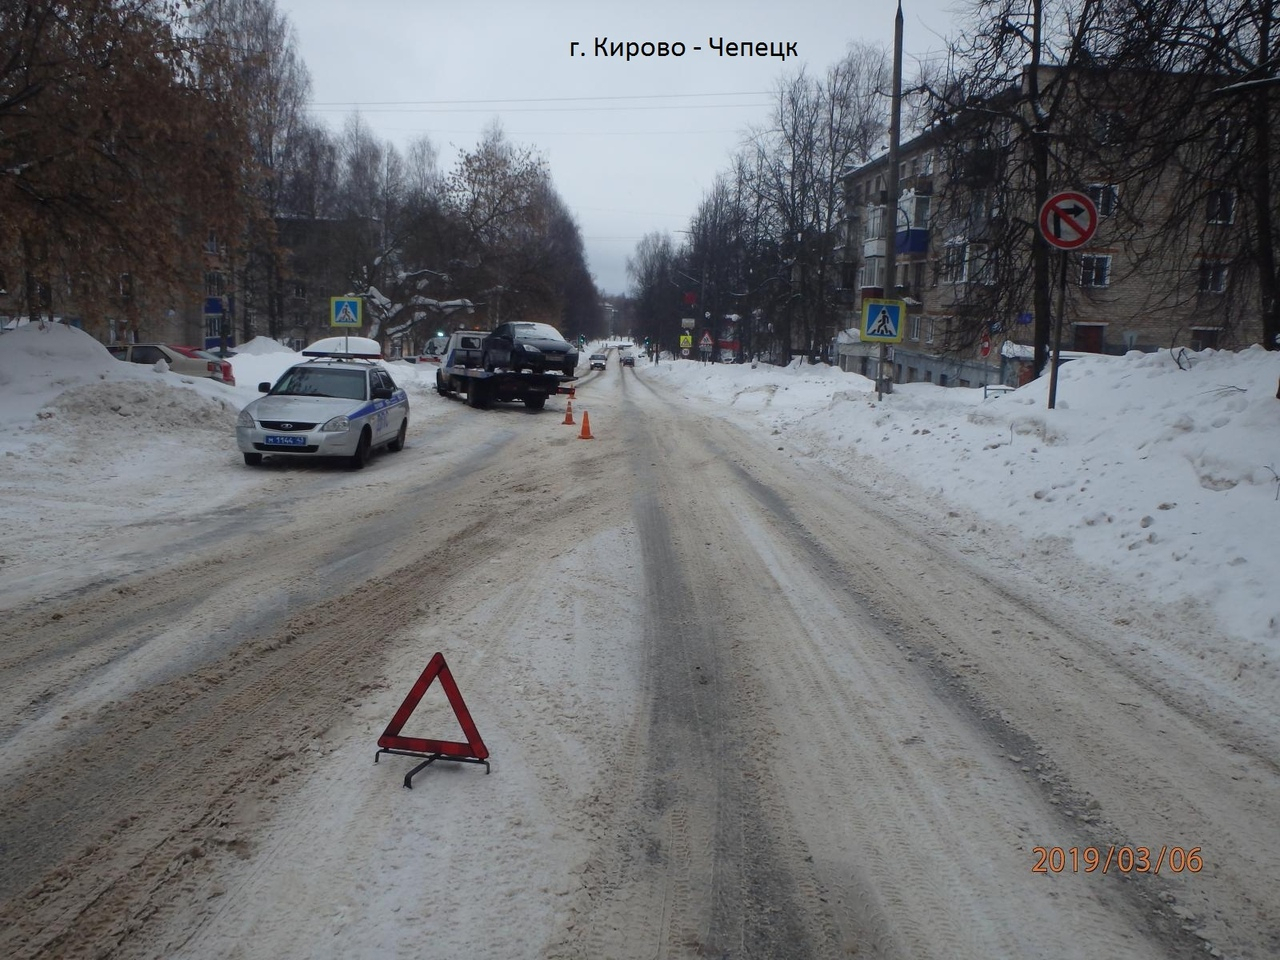 В Кирово-Чепецке автомобиль сбил мальчика, который перебегал дорогу по зебре